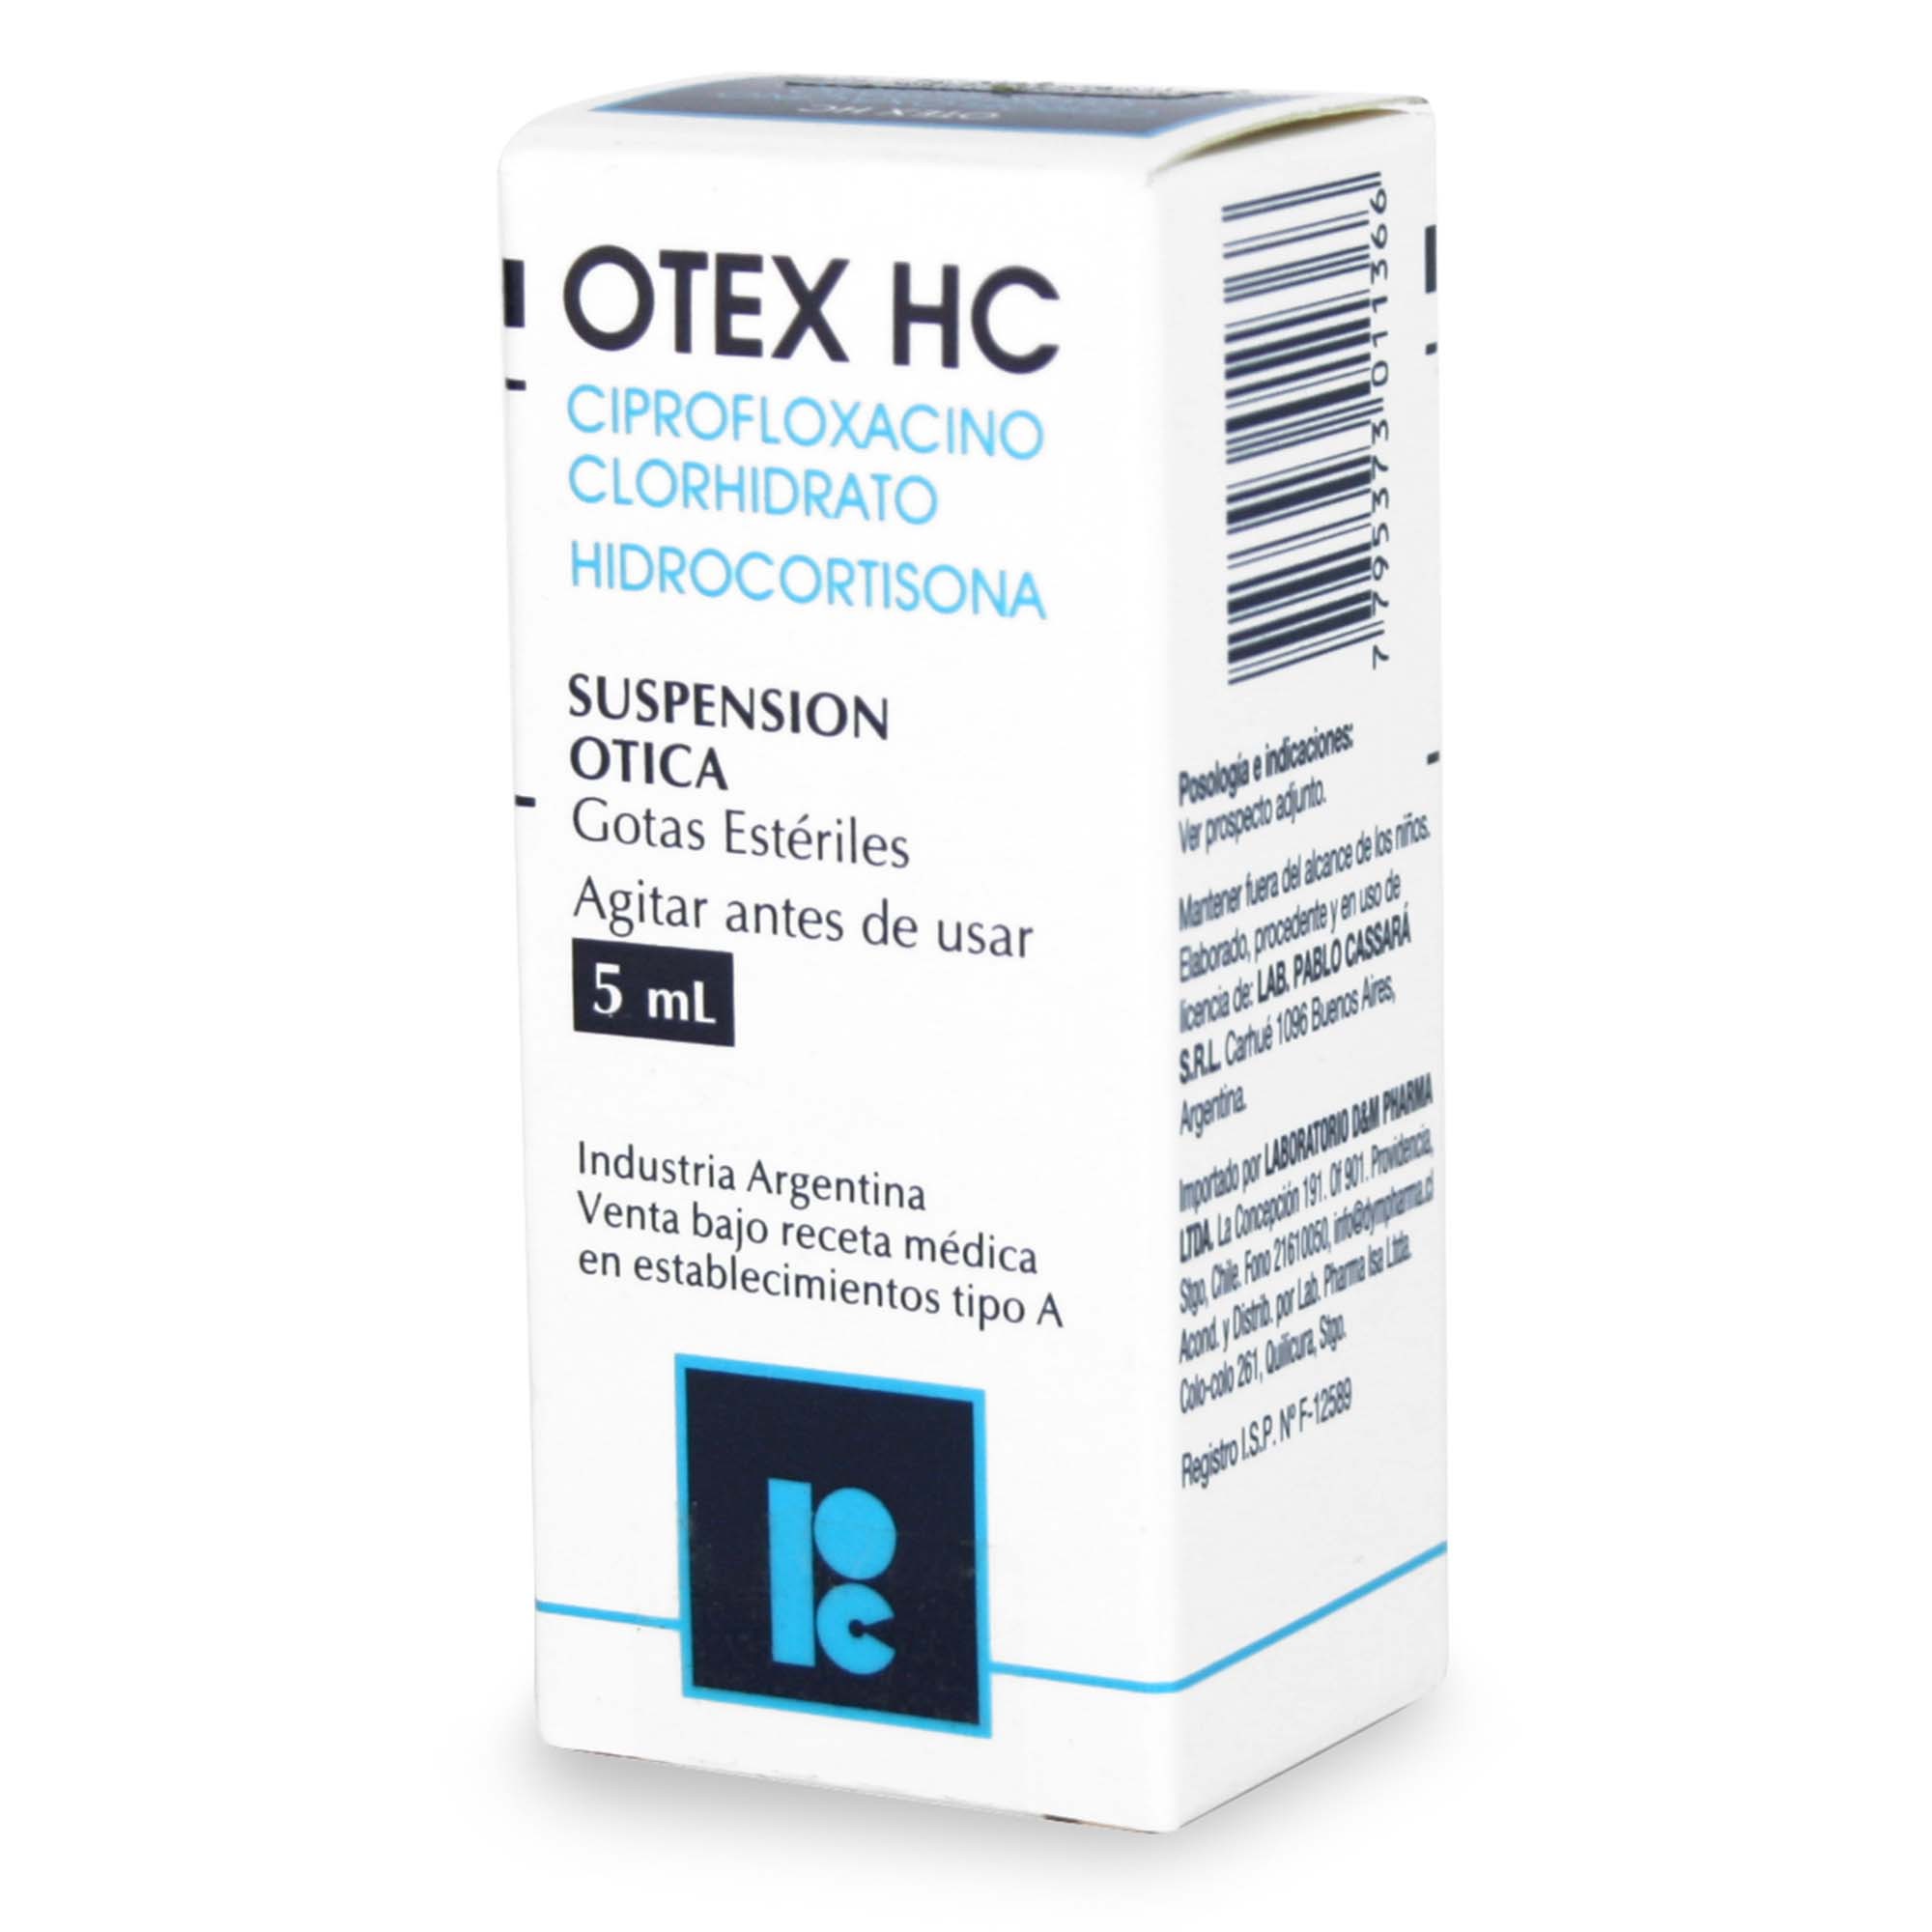 Otex HC Ciprofloxacino 0,2% Solución Otologica 5 mL | Farmacias Cruz Verde